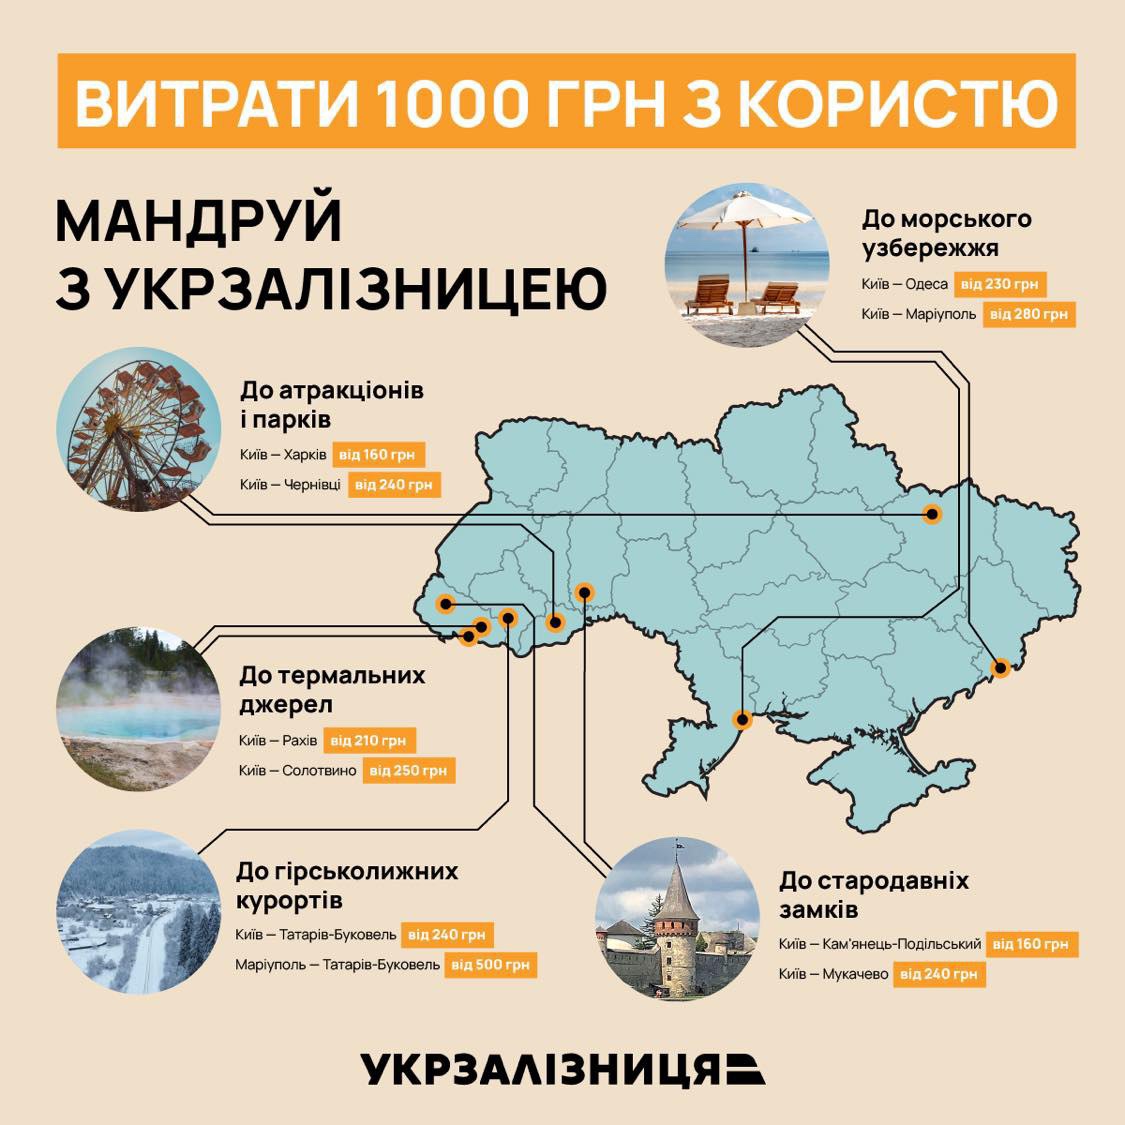 карта подорожей залізницею України